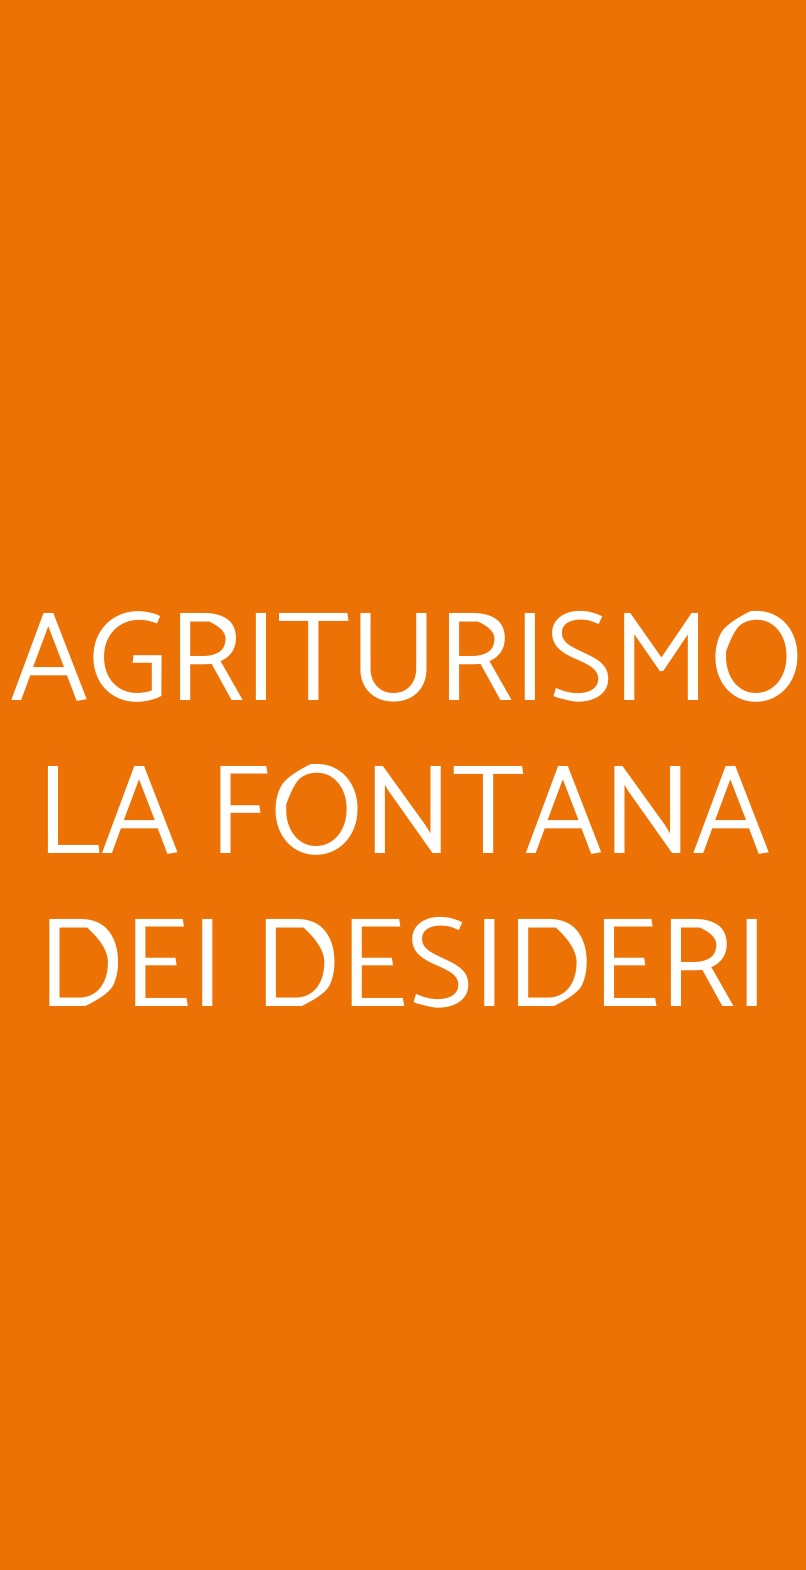 AGRITURISMO LA FONTANA DEI DESIDERI Alghero menù 1 pagina